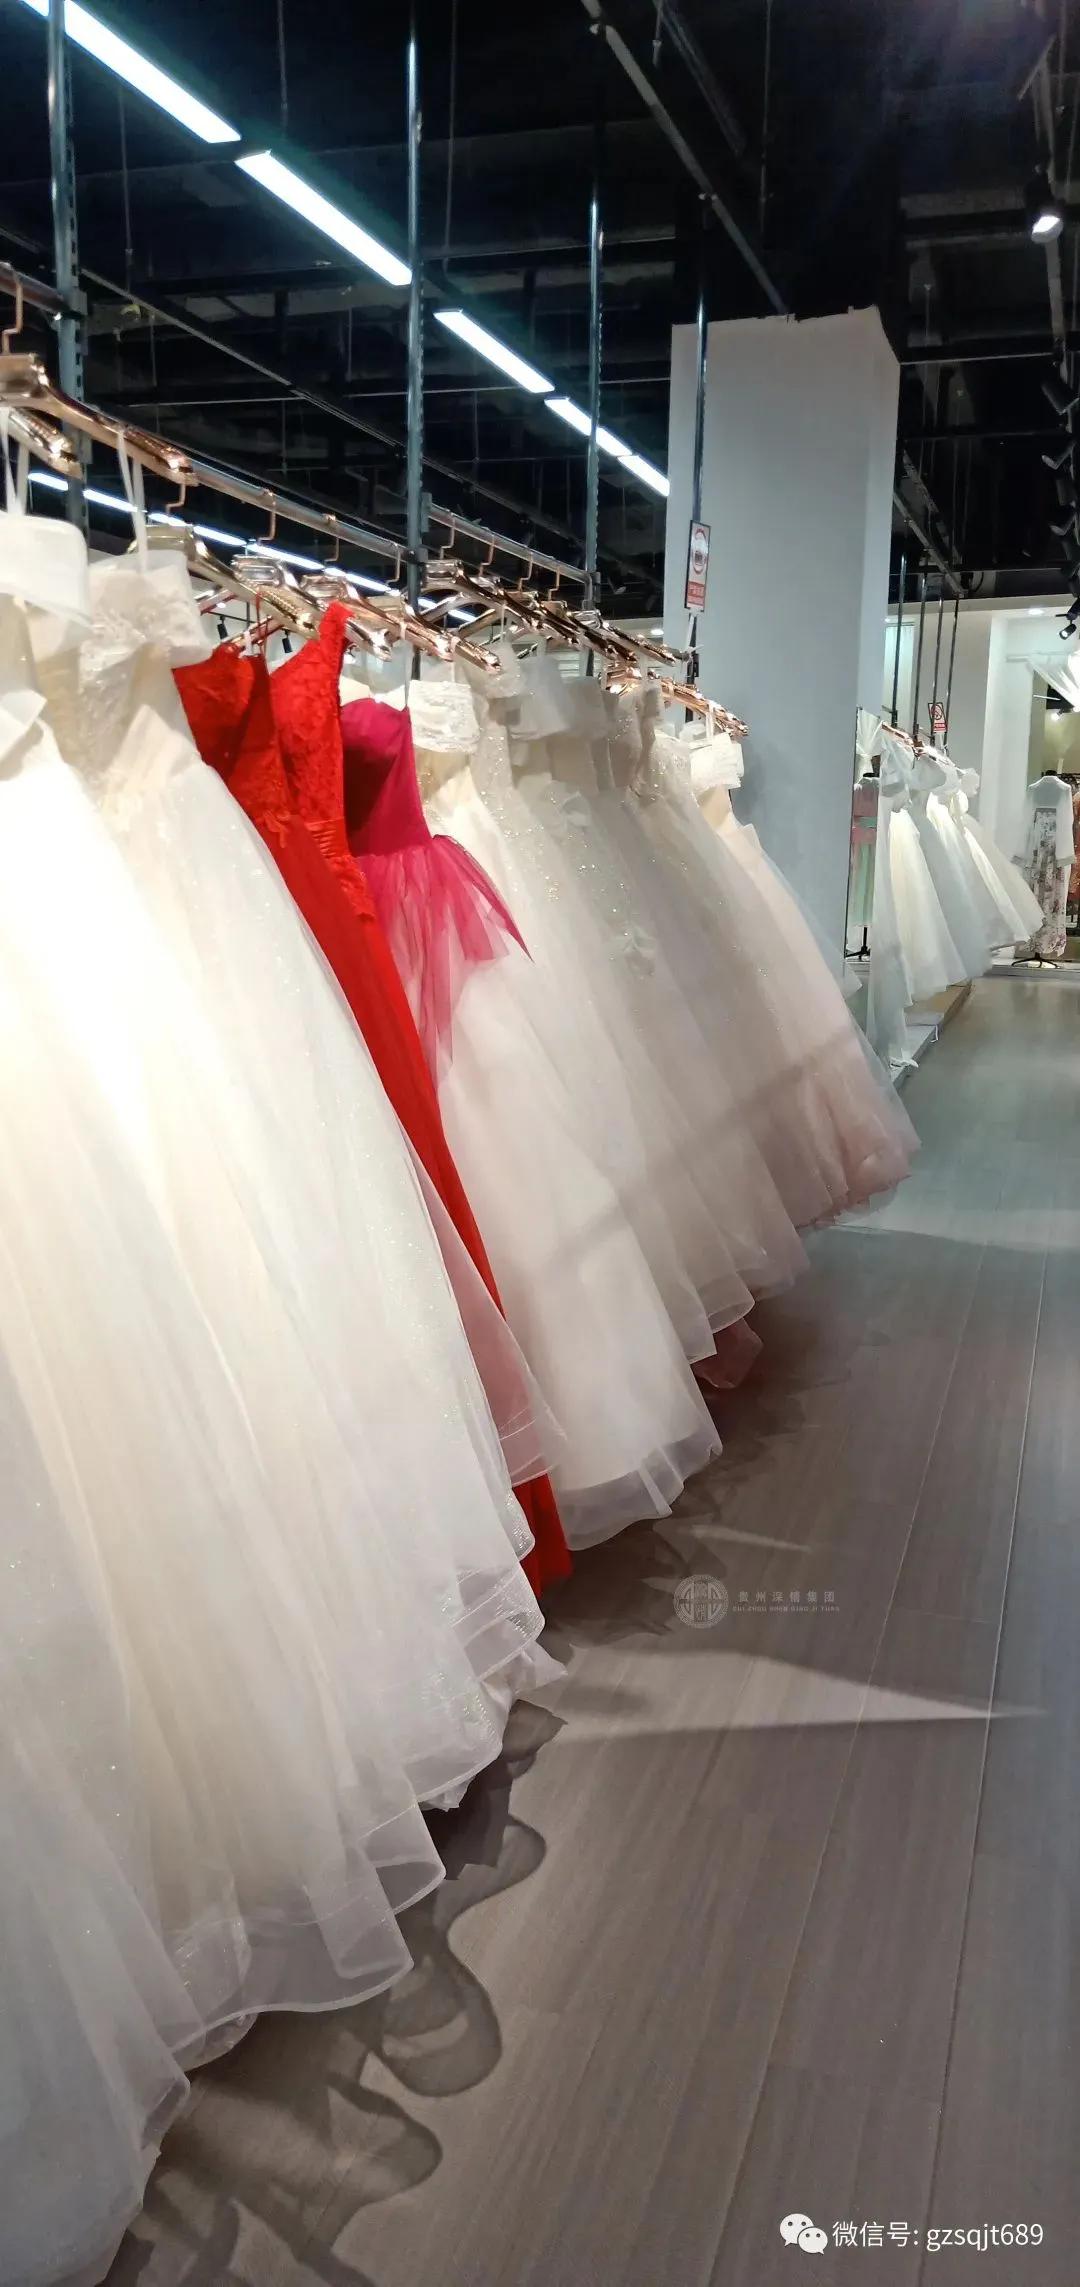 婚纱、礼服、秀禾服、旗袍、西装专属私人定制与出租 ~ 项目